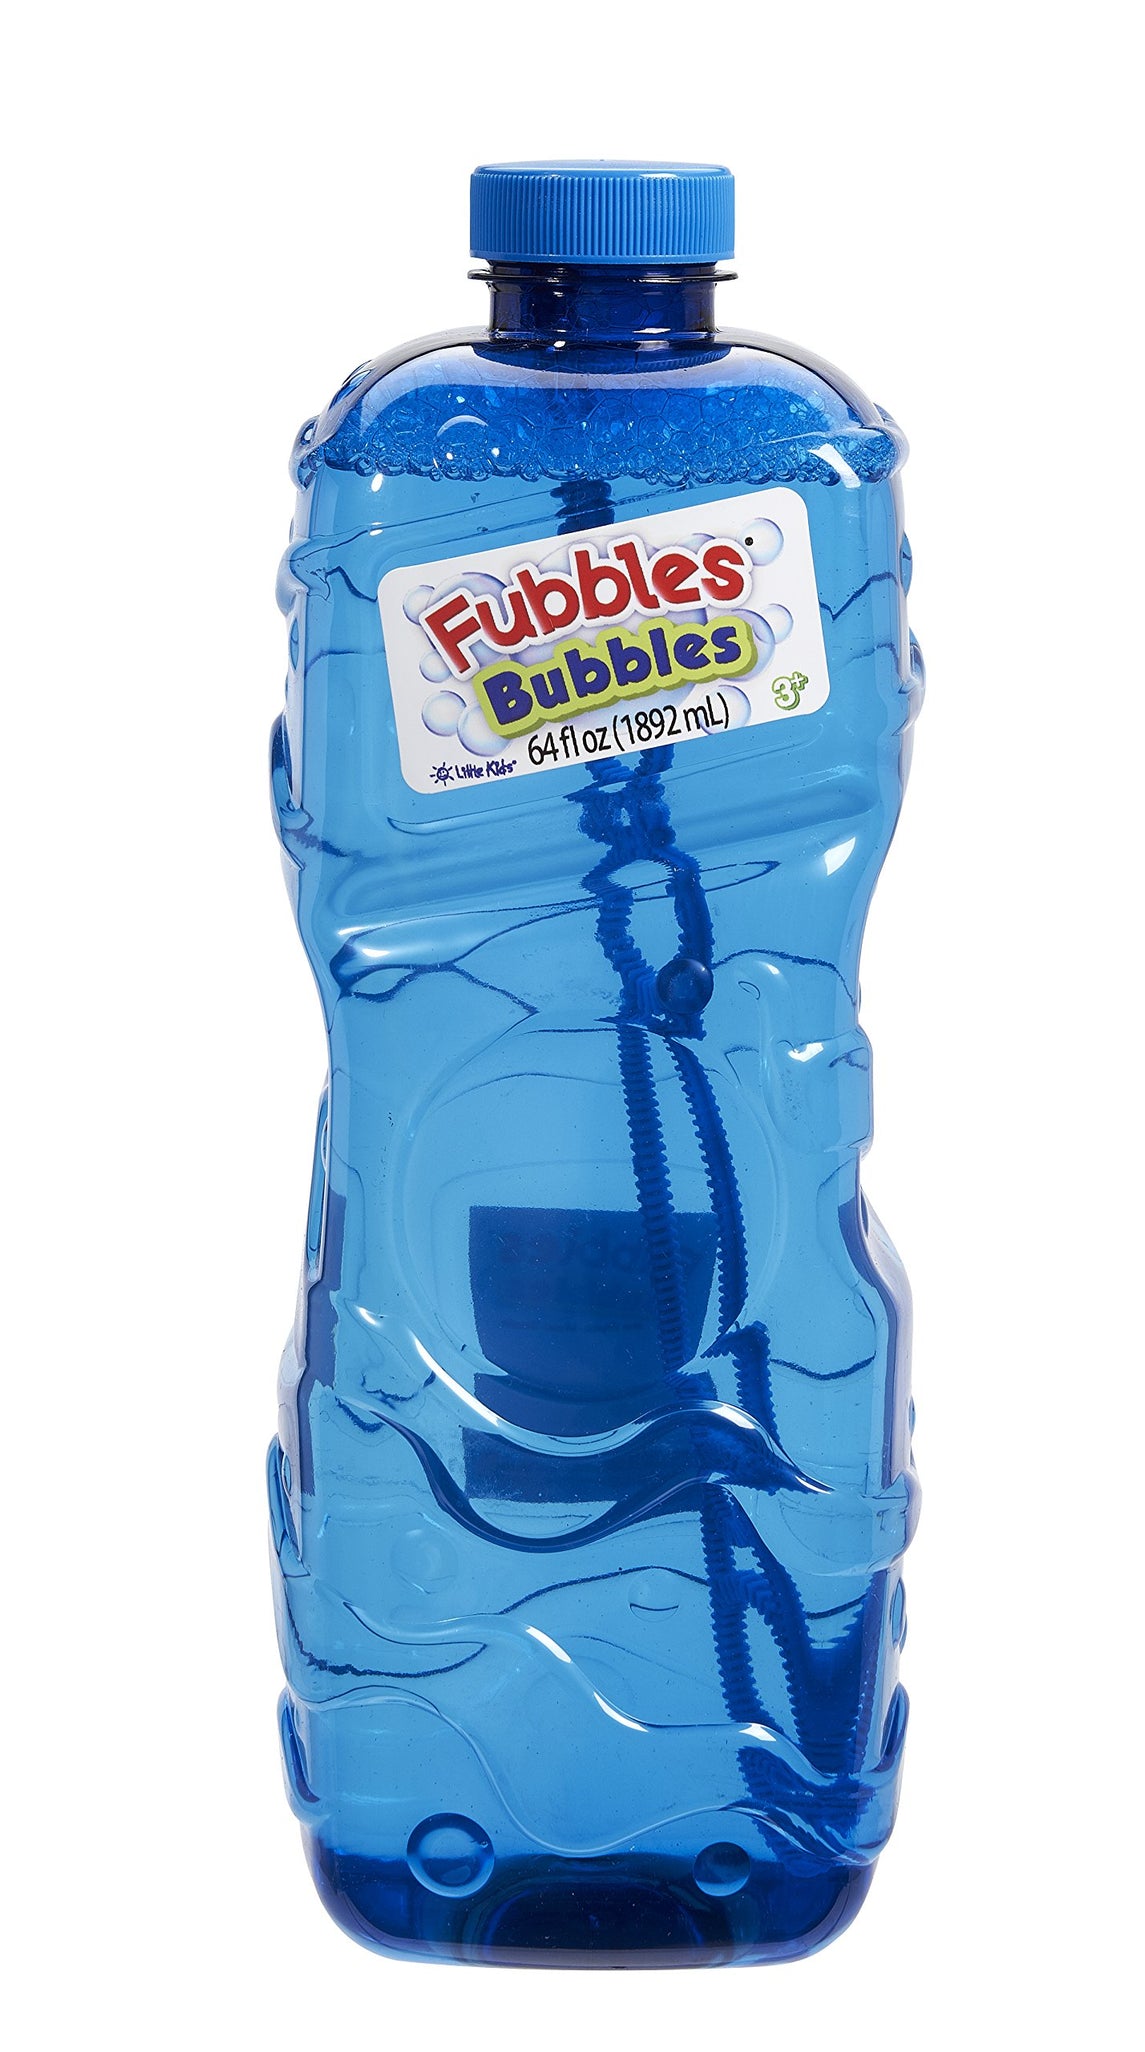 Little Kids Fubbles Premium Long Lasting Bubble Solution, Assorted Colors, 64 oz